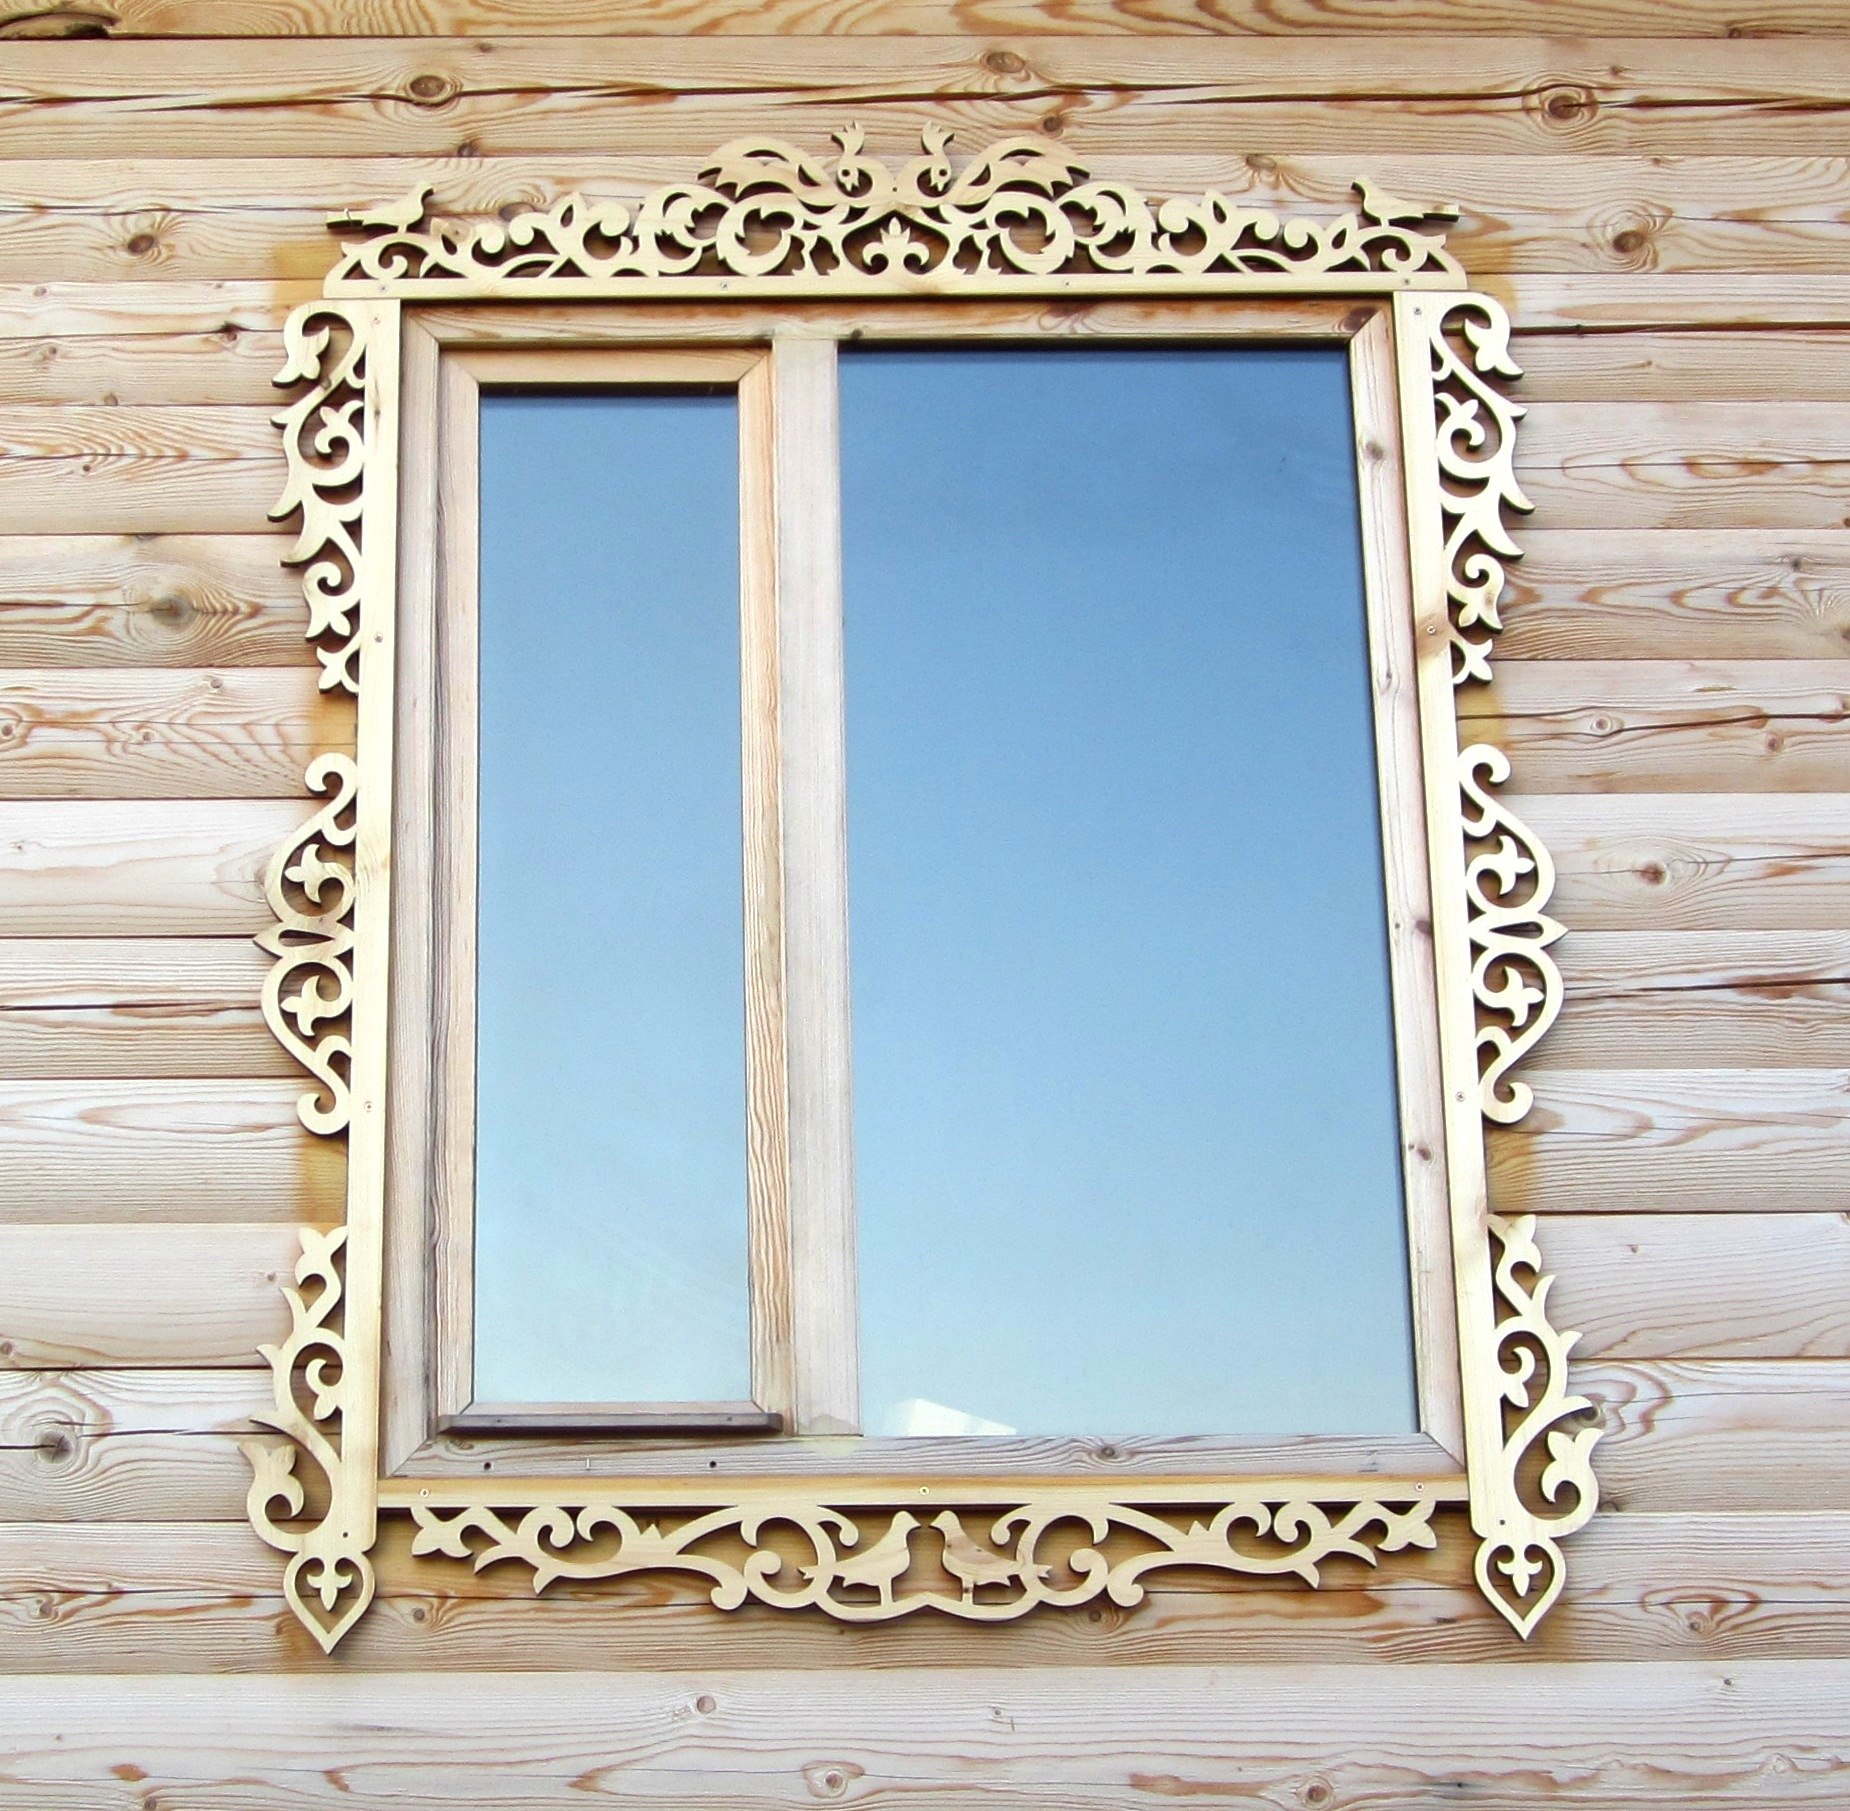 لوحة خشبية للنافذة مقطوعة بالليزر